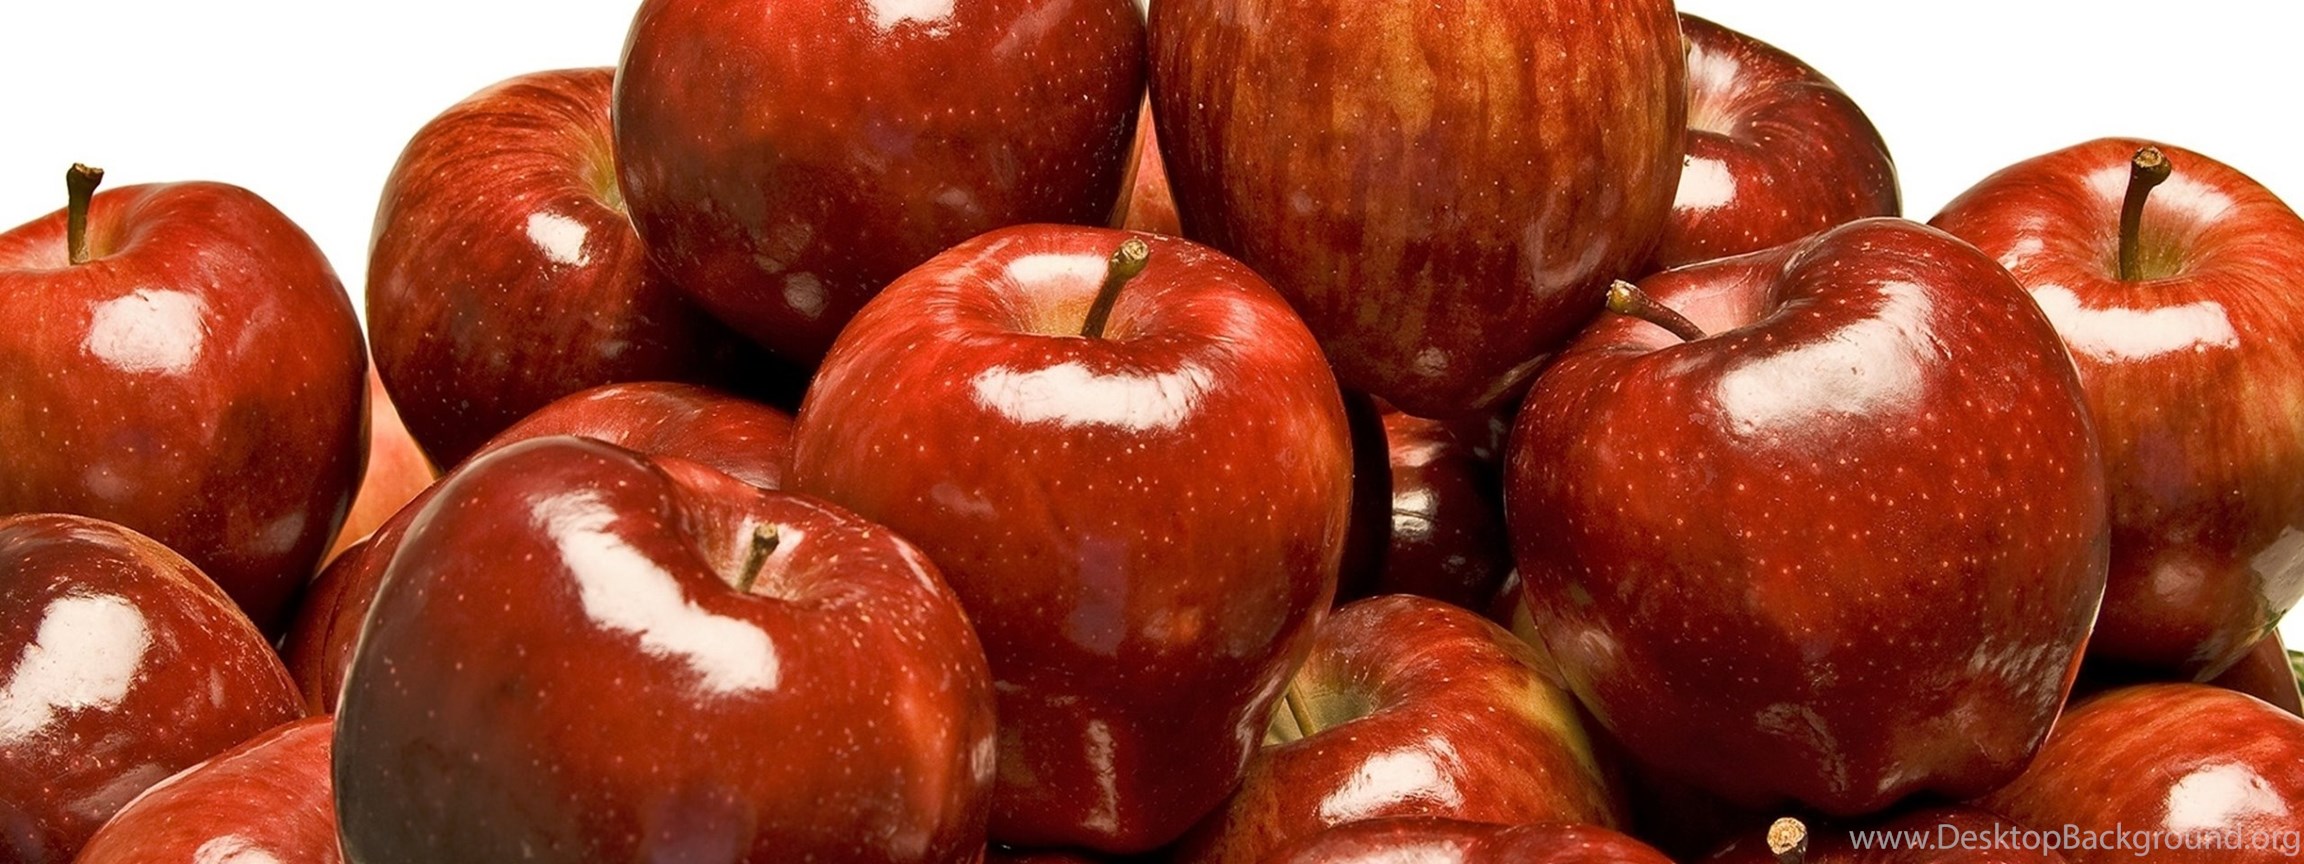 К чему снится яблоки красные много. Турецкая красная яблоко. К чему снятся яблоки женщине красные большие. Яблочко Украина. К чему снятся яблоки во сне мужчине